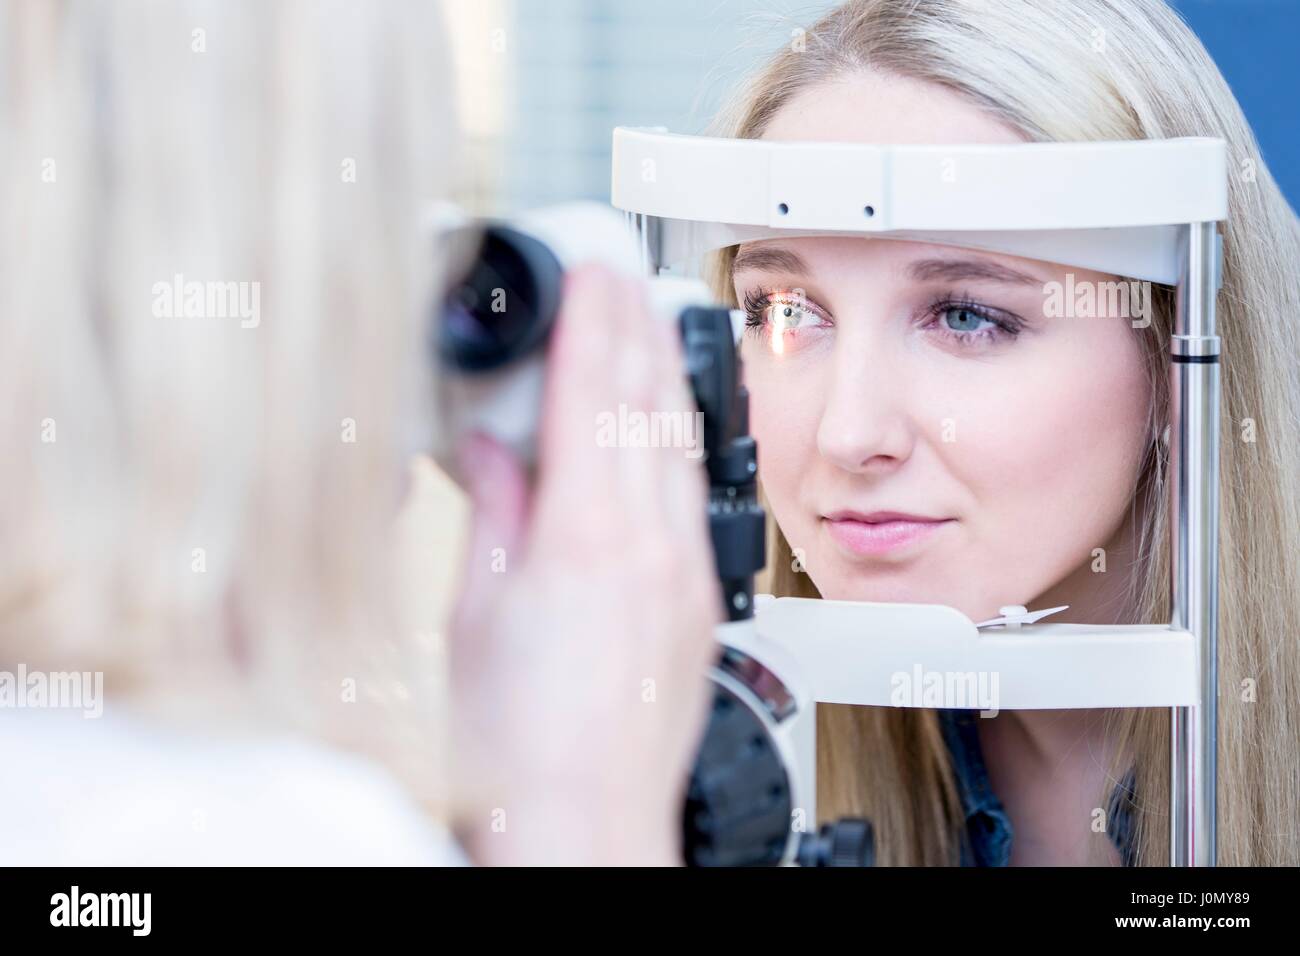 Paziente di sesso femminile avente occhio in esame all'ottico optometrista del negozio, close-up. Foto Stock